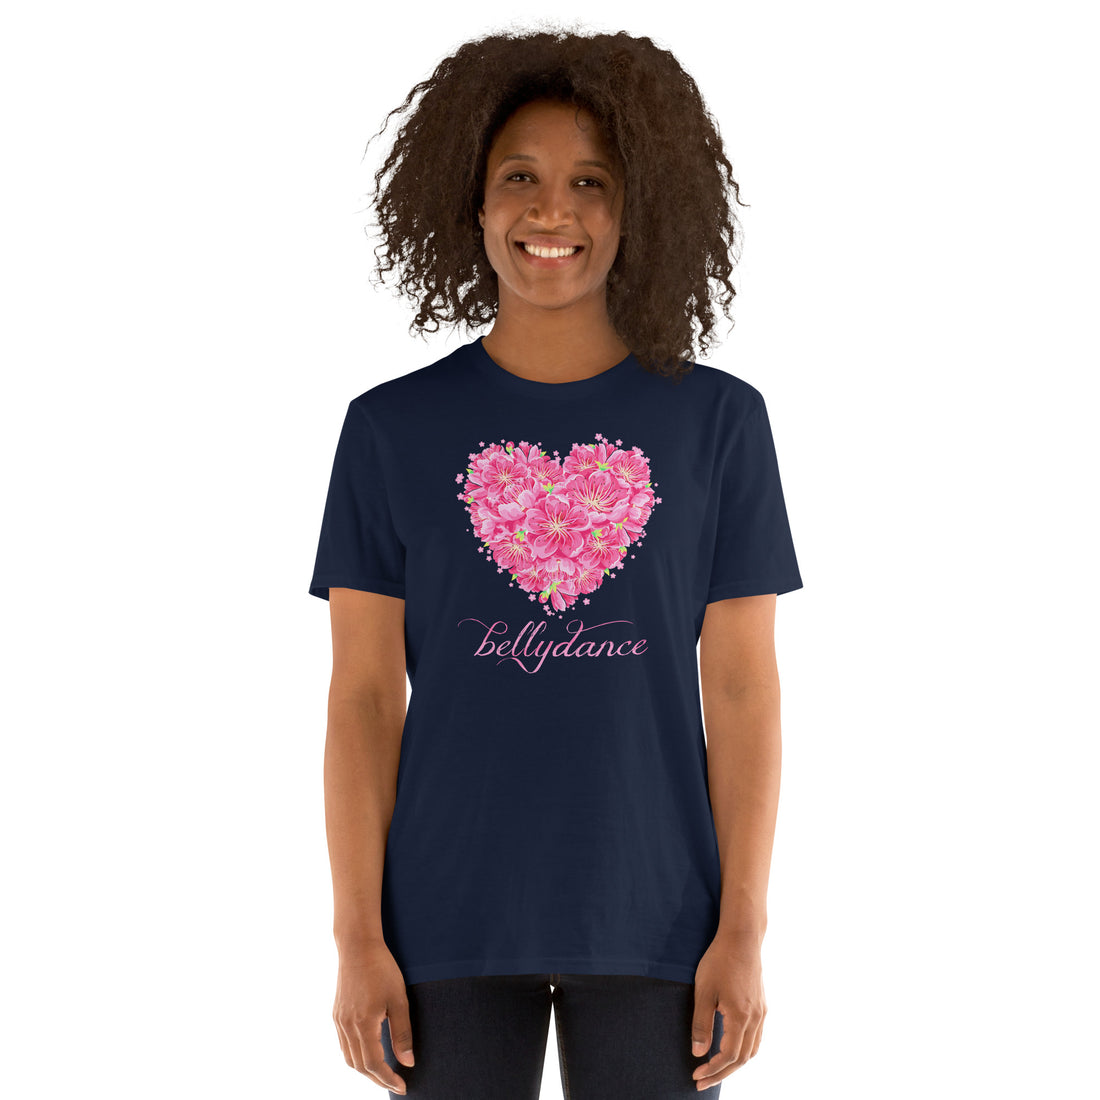 Flower Heart Belly Dance T-Shirt - gift for a dance lover, dancer, bellydancer - soft 100% cotton